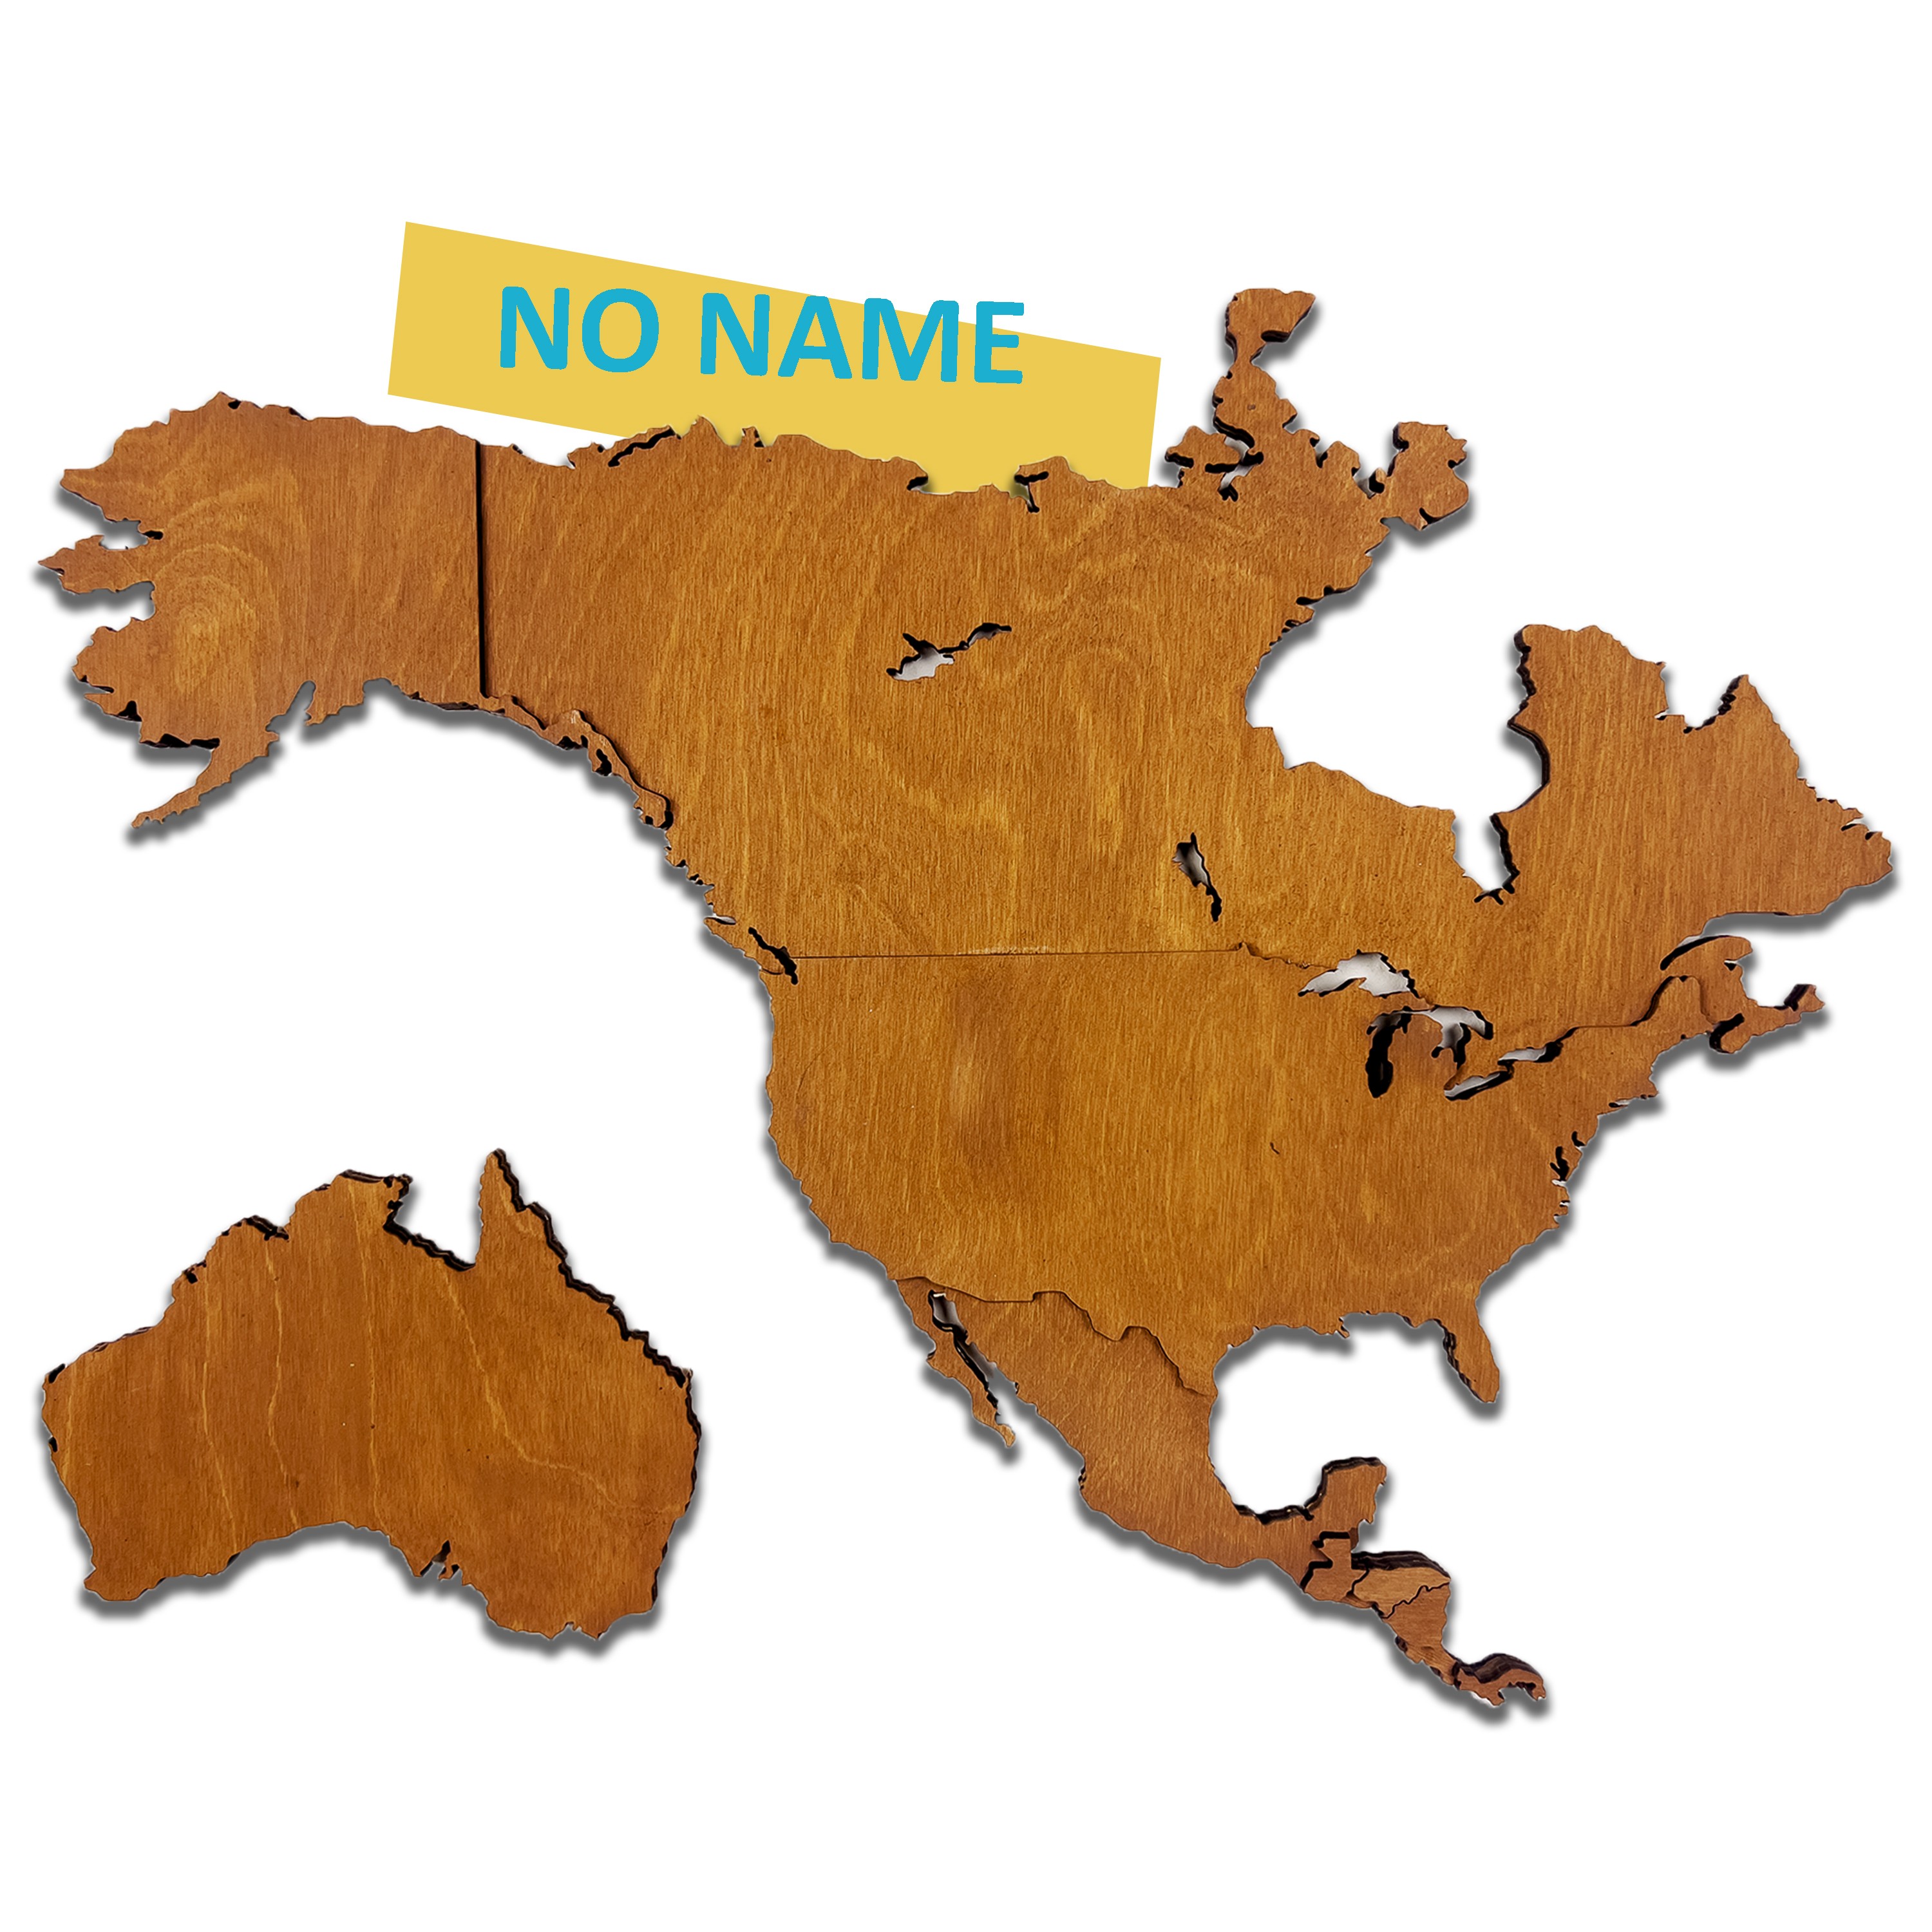 508 - Wooden World Map